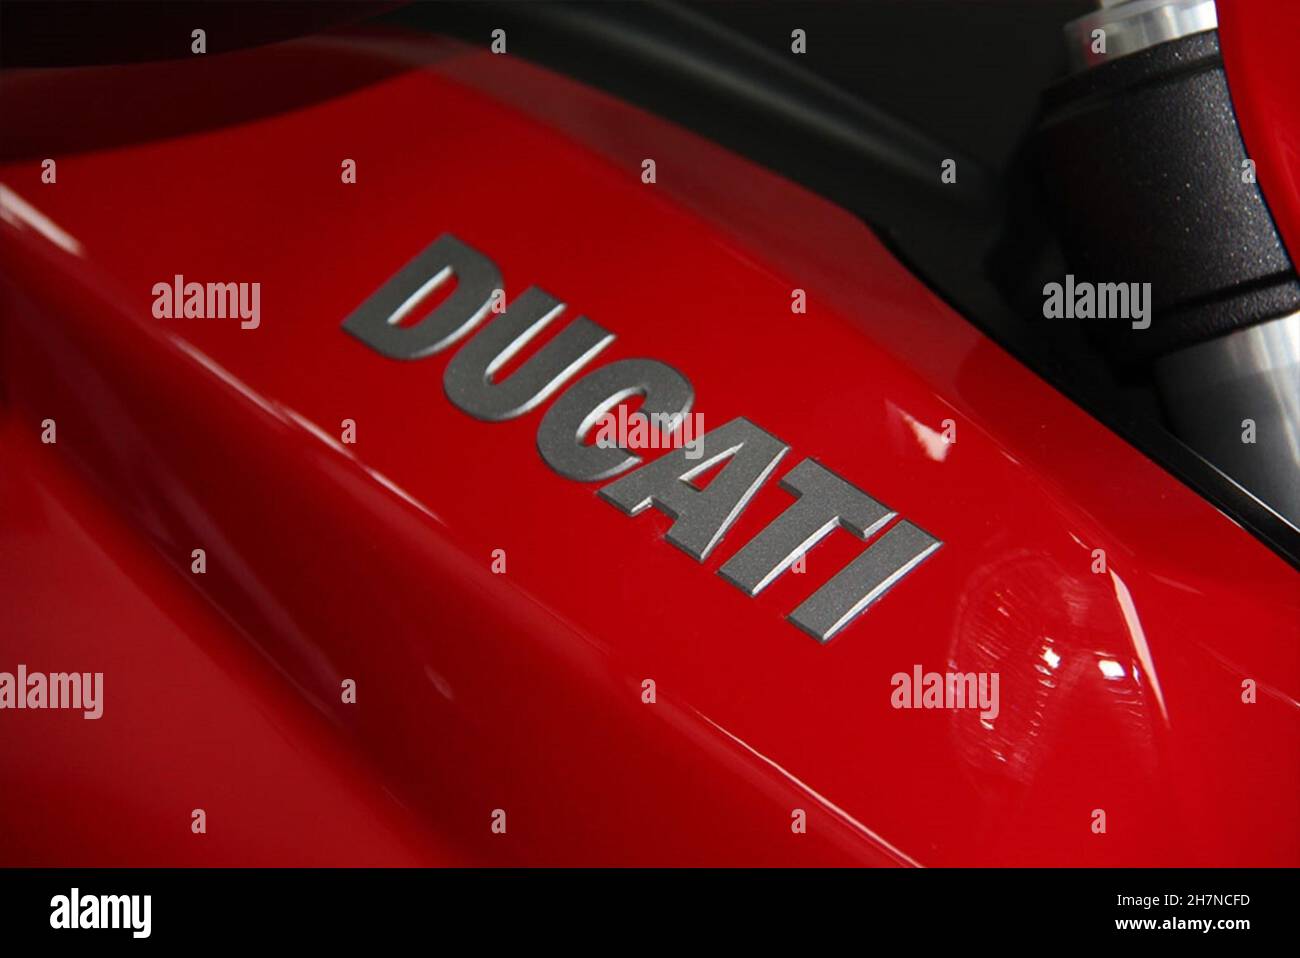 Ducati moto: Iscrizione Ducati su carenatura rossa. São Paulo - São Paulo - Brasile. Marzo 2017. Foto Stock